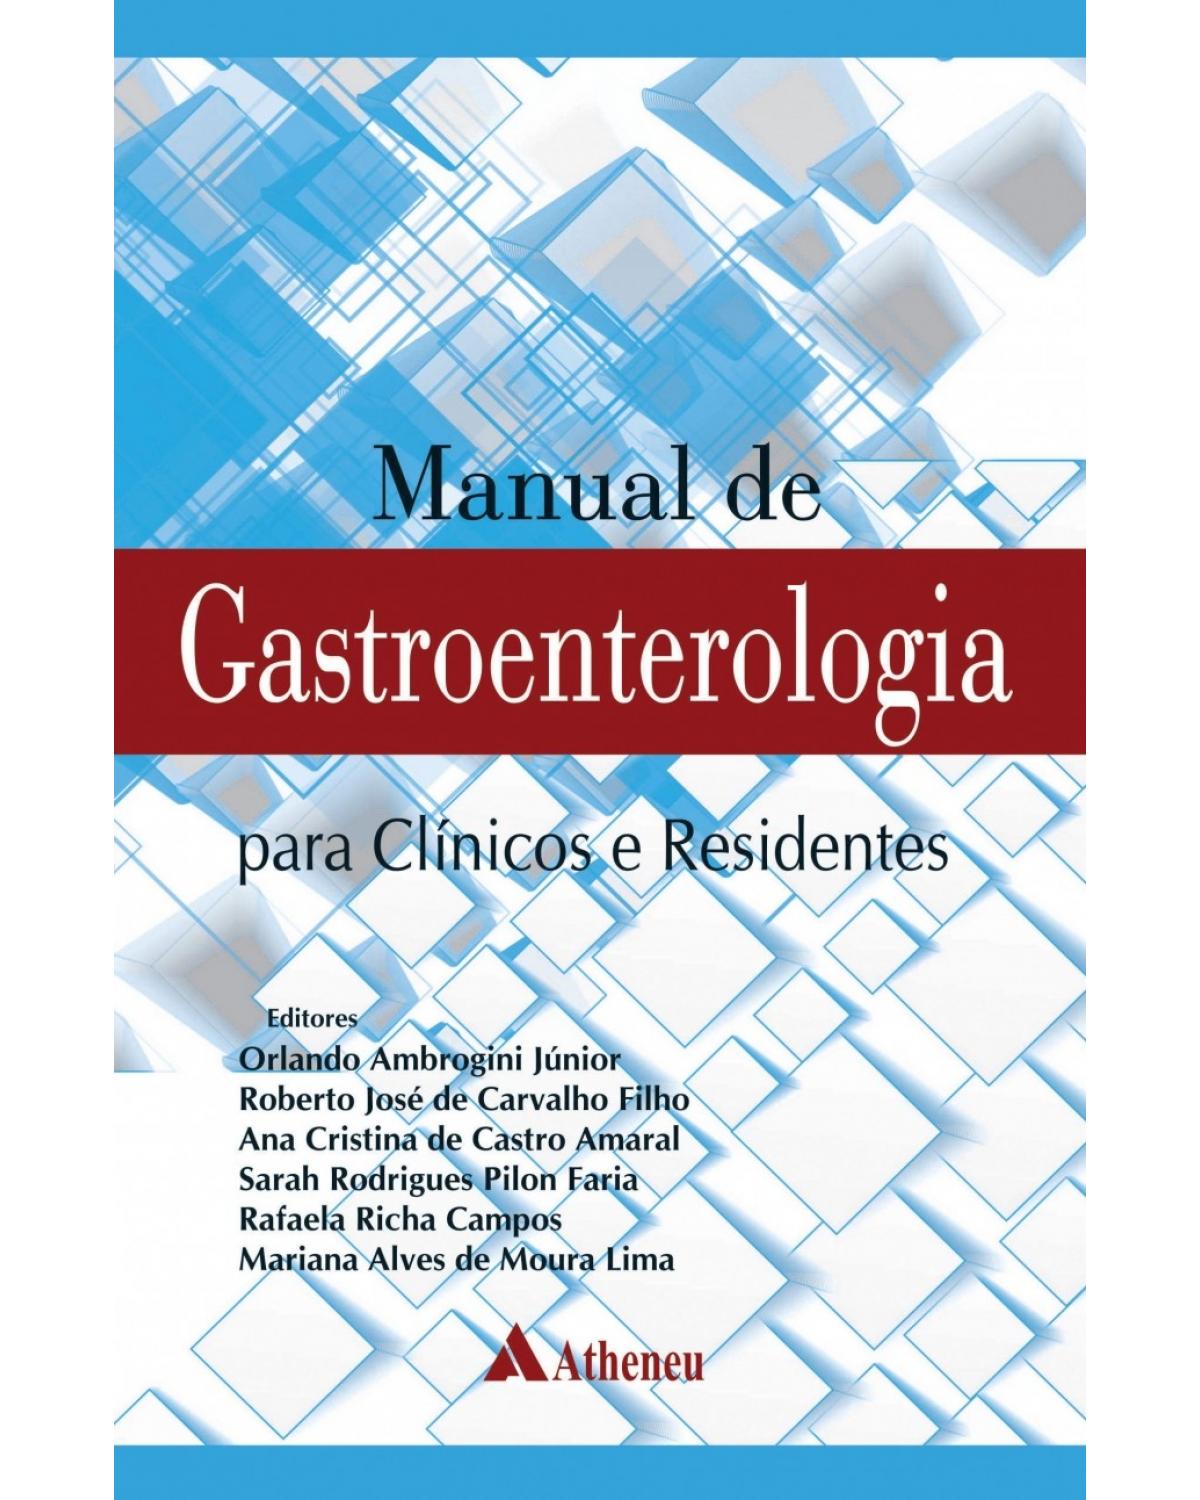 Manual de gastroenterologia - para clínicos e residentes - 1ª Edição | 2018